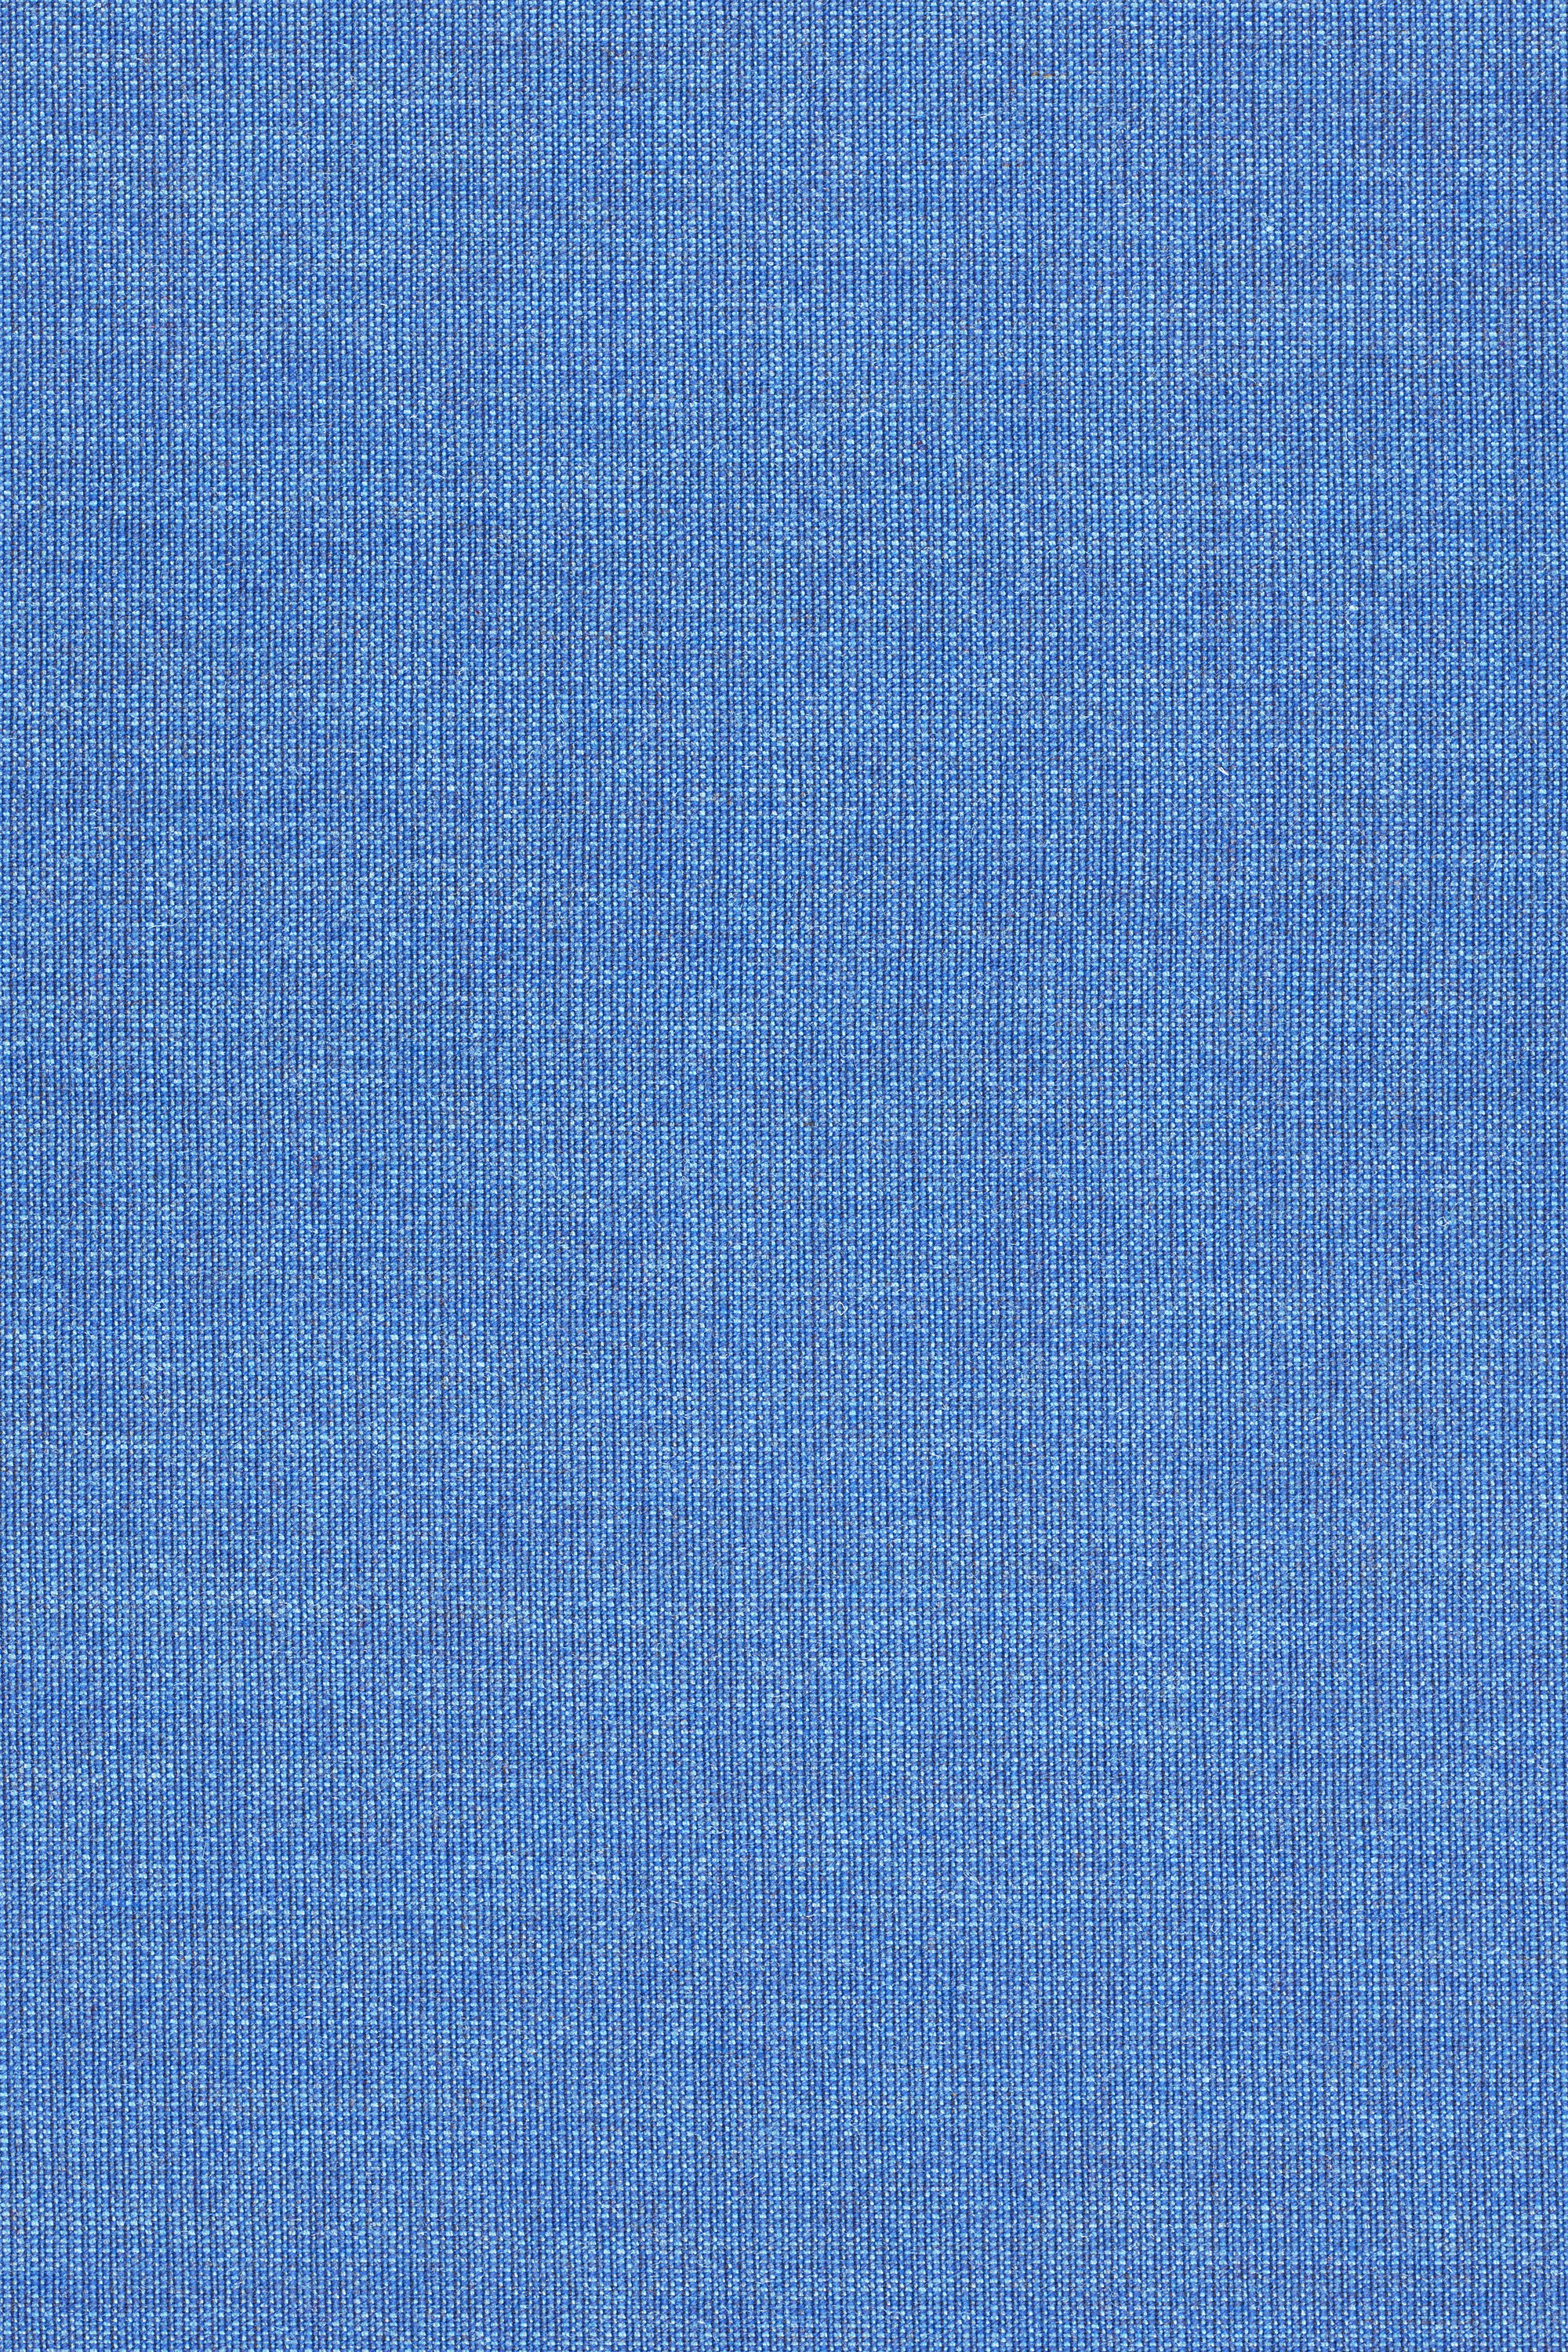 CANVAS 2 0746 - Upholstery fabrics from Kvadrat | Architonic